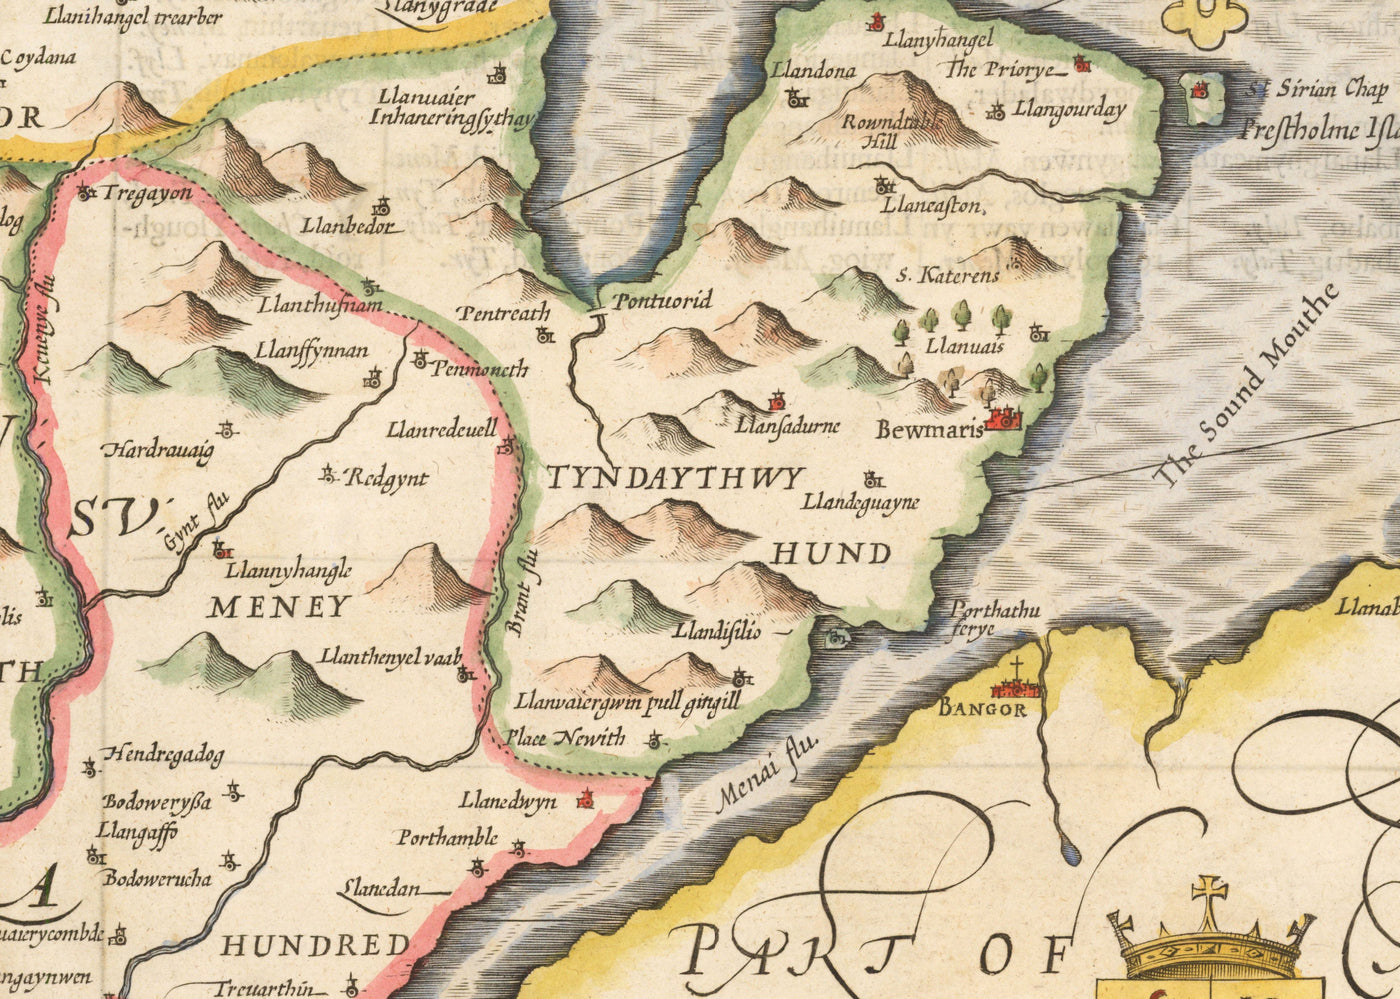 Alte Karte von Anglesey Wales, 1611 von John Speed ​​- Holyhead, Llanfairpwllgwyngyll, Bangor